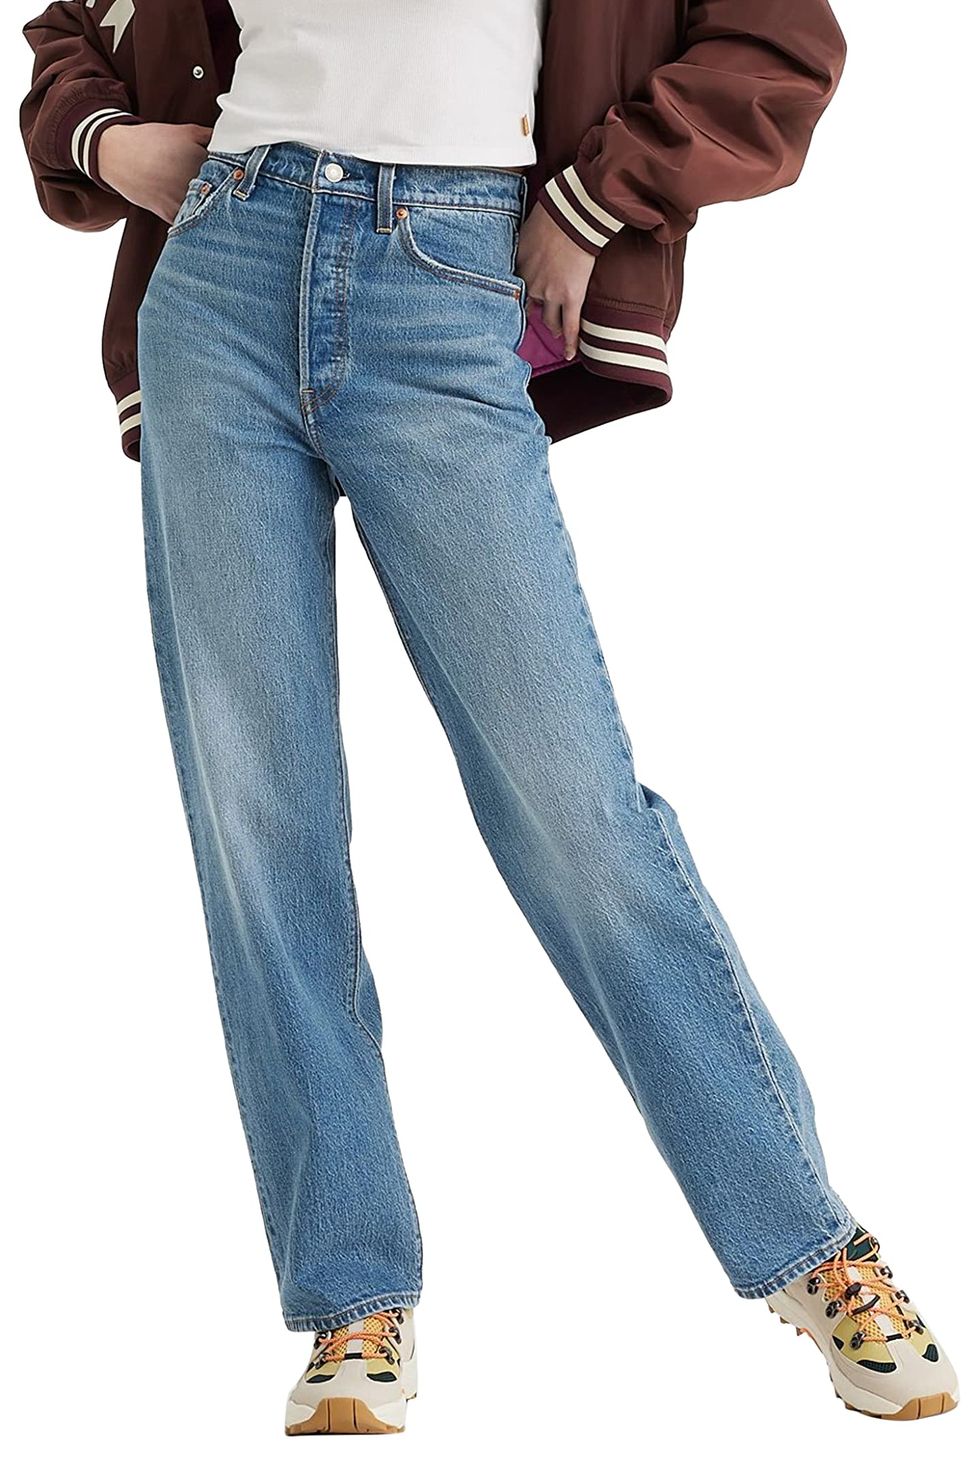 Levi's Women's Ribcage Full Length Jeans